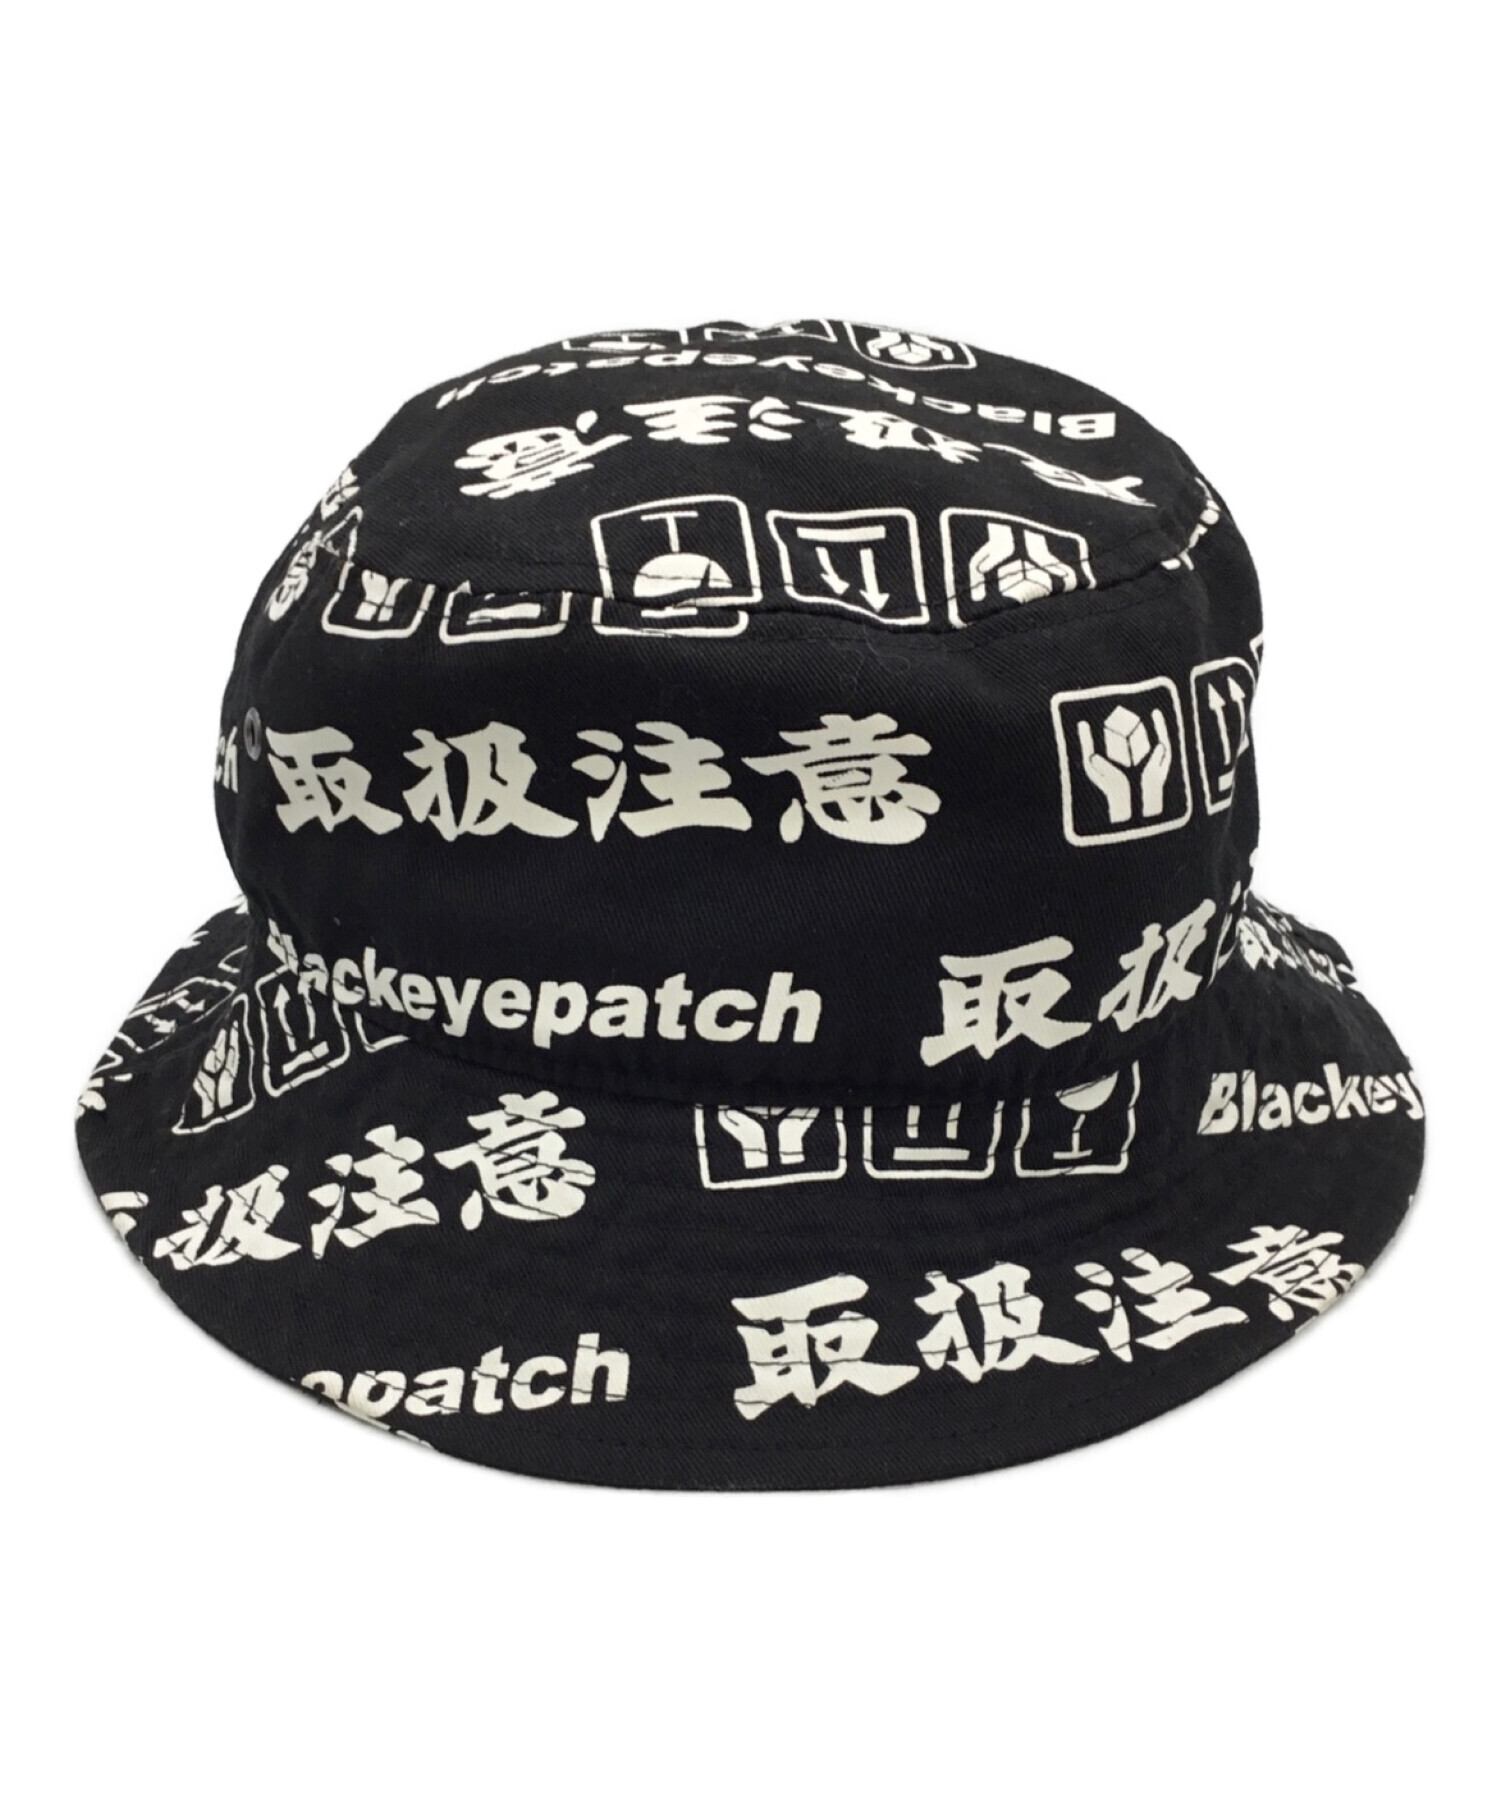 人気商品 L XL blackeyepatch バケットハット 帽子 ブラックアイパッチ